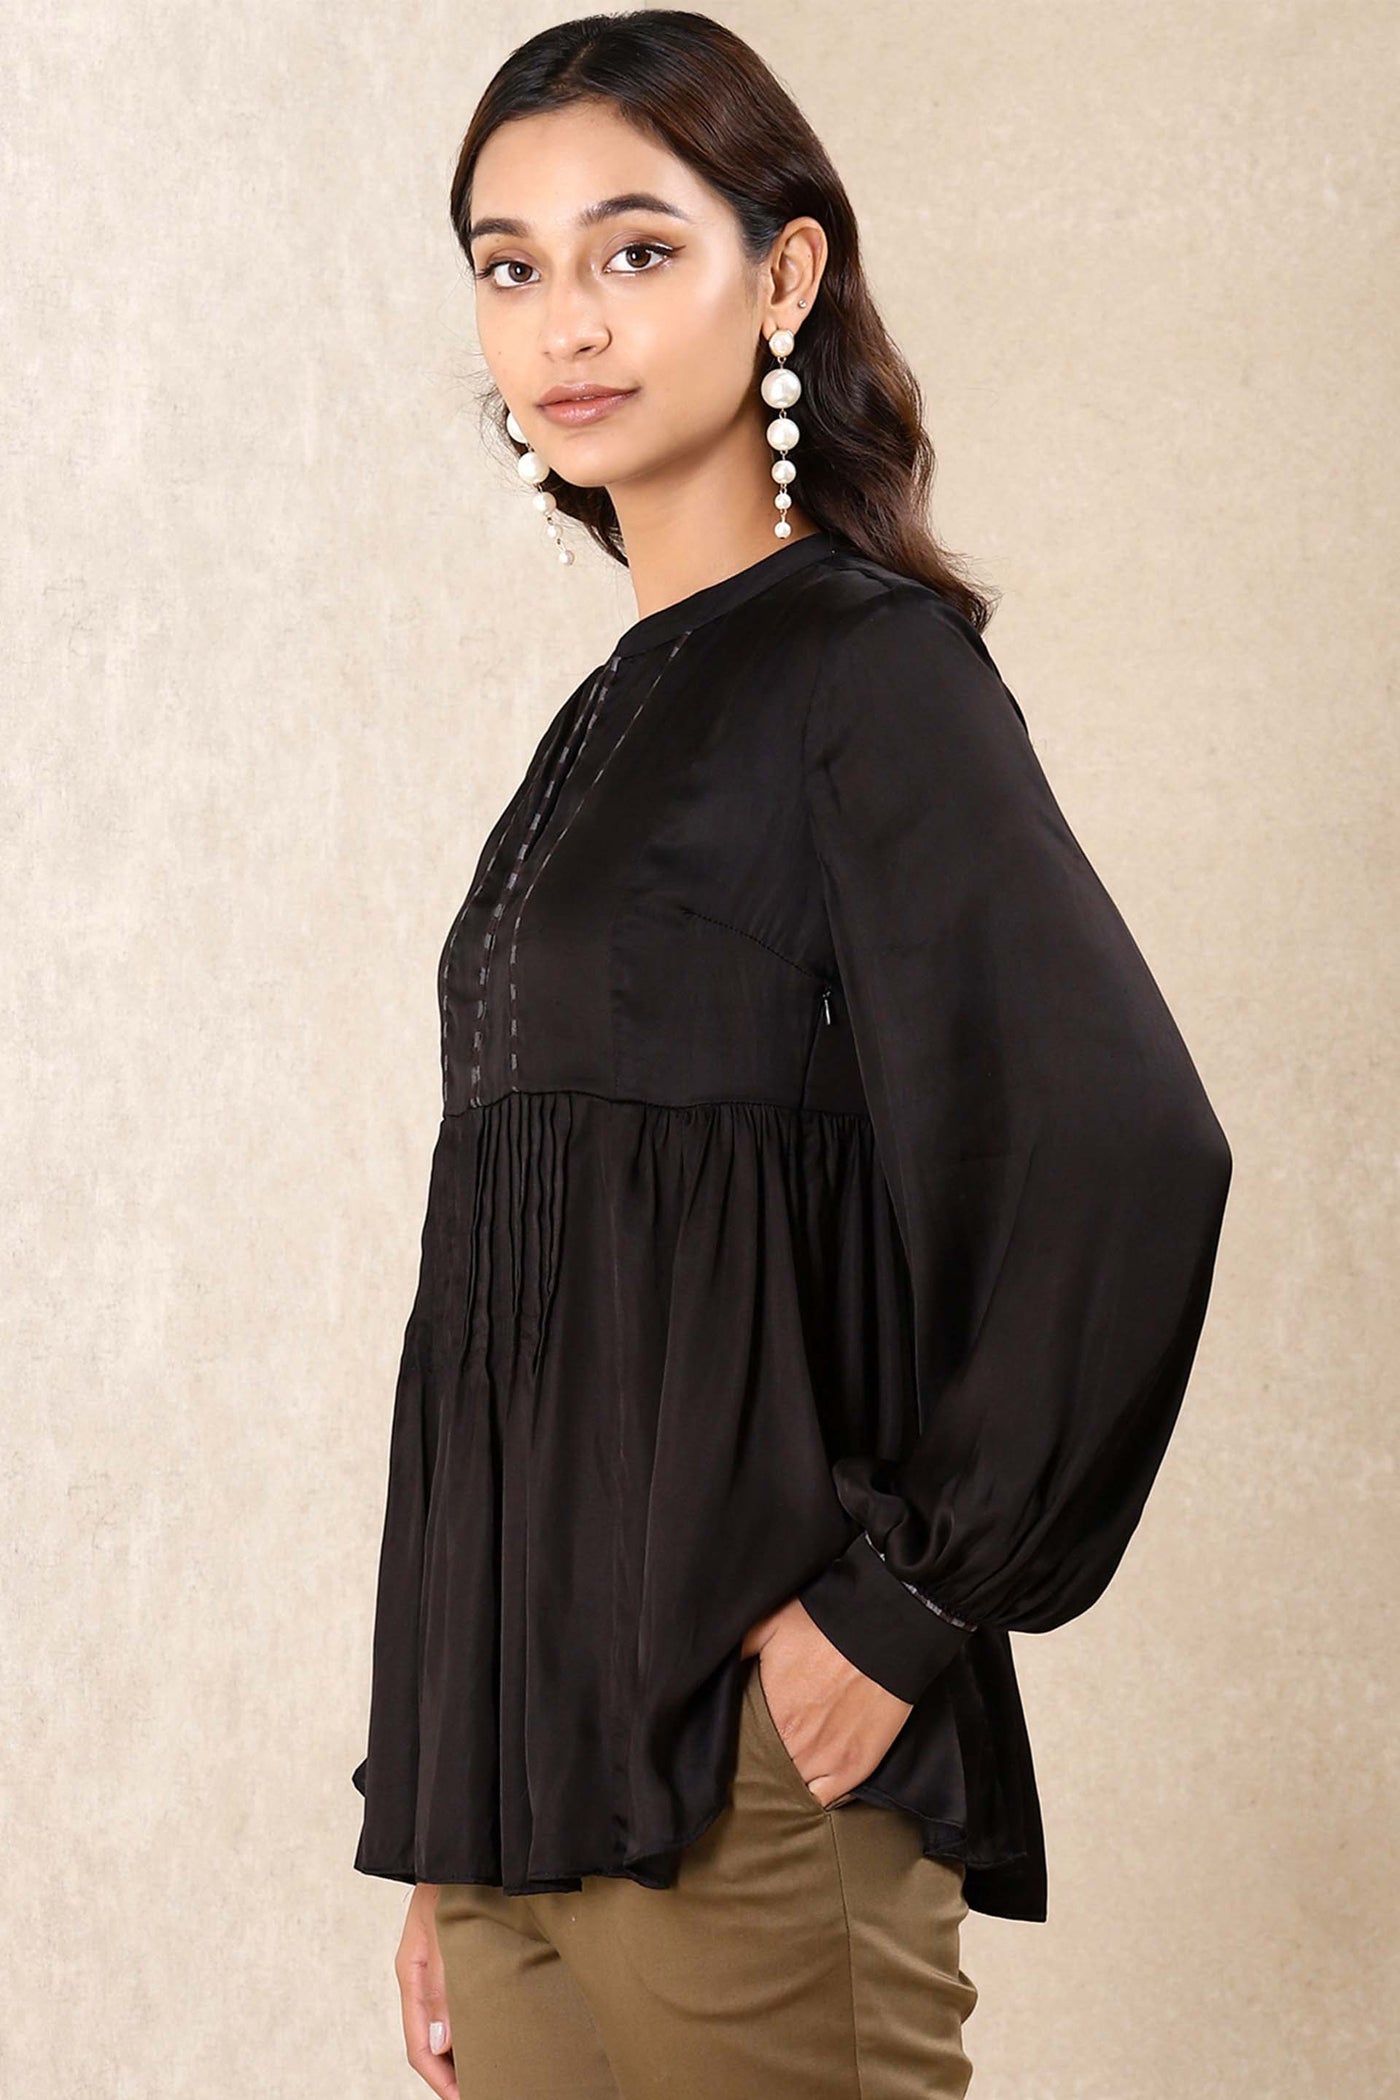 Ritu kumar Black Satin Kurti western indian designer wear online shopping melange singapore